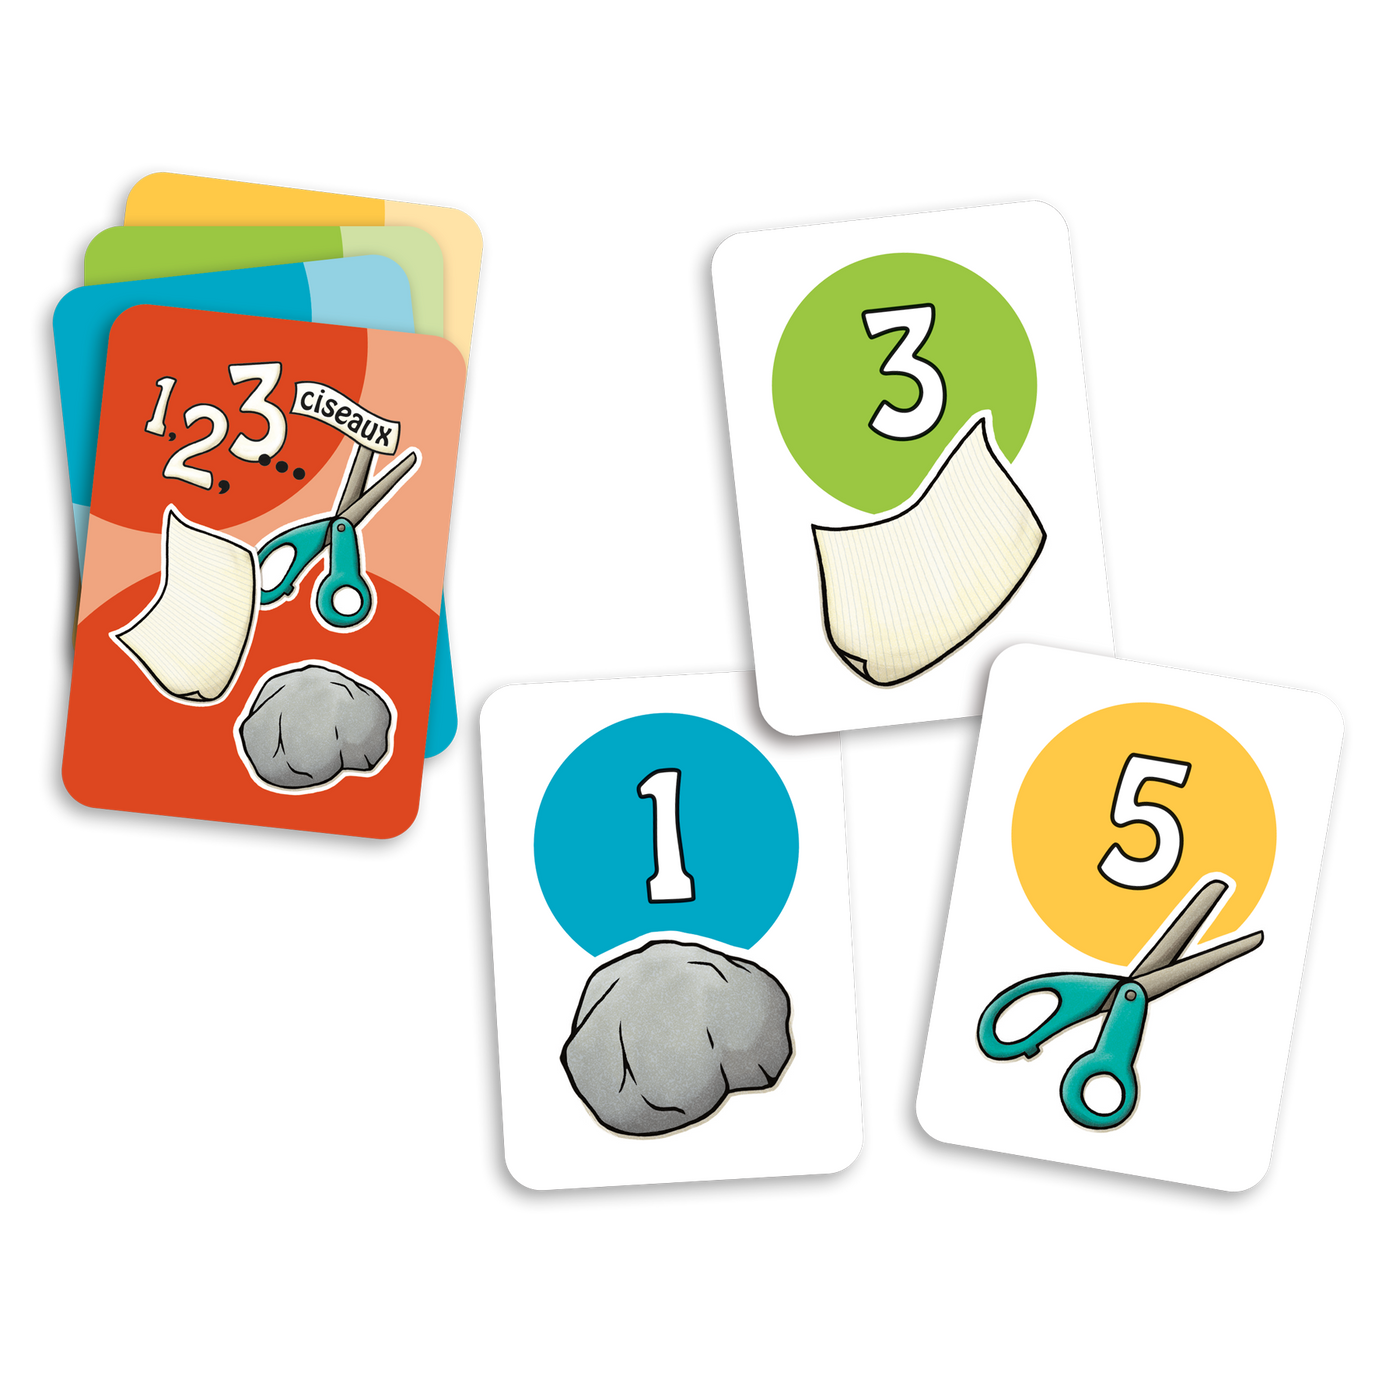 1,2,3… ciseaux - Exemples de cartes : roche-1 (bleu), papier-3 (vert), ciseaux-5 (rouge) et dos de cartes des 4 couleurs